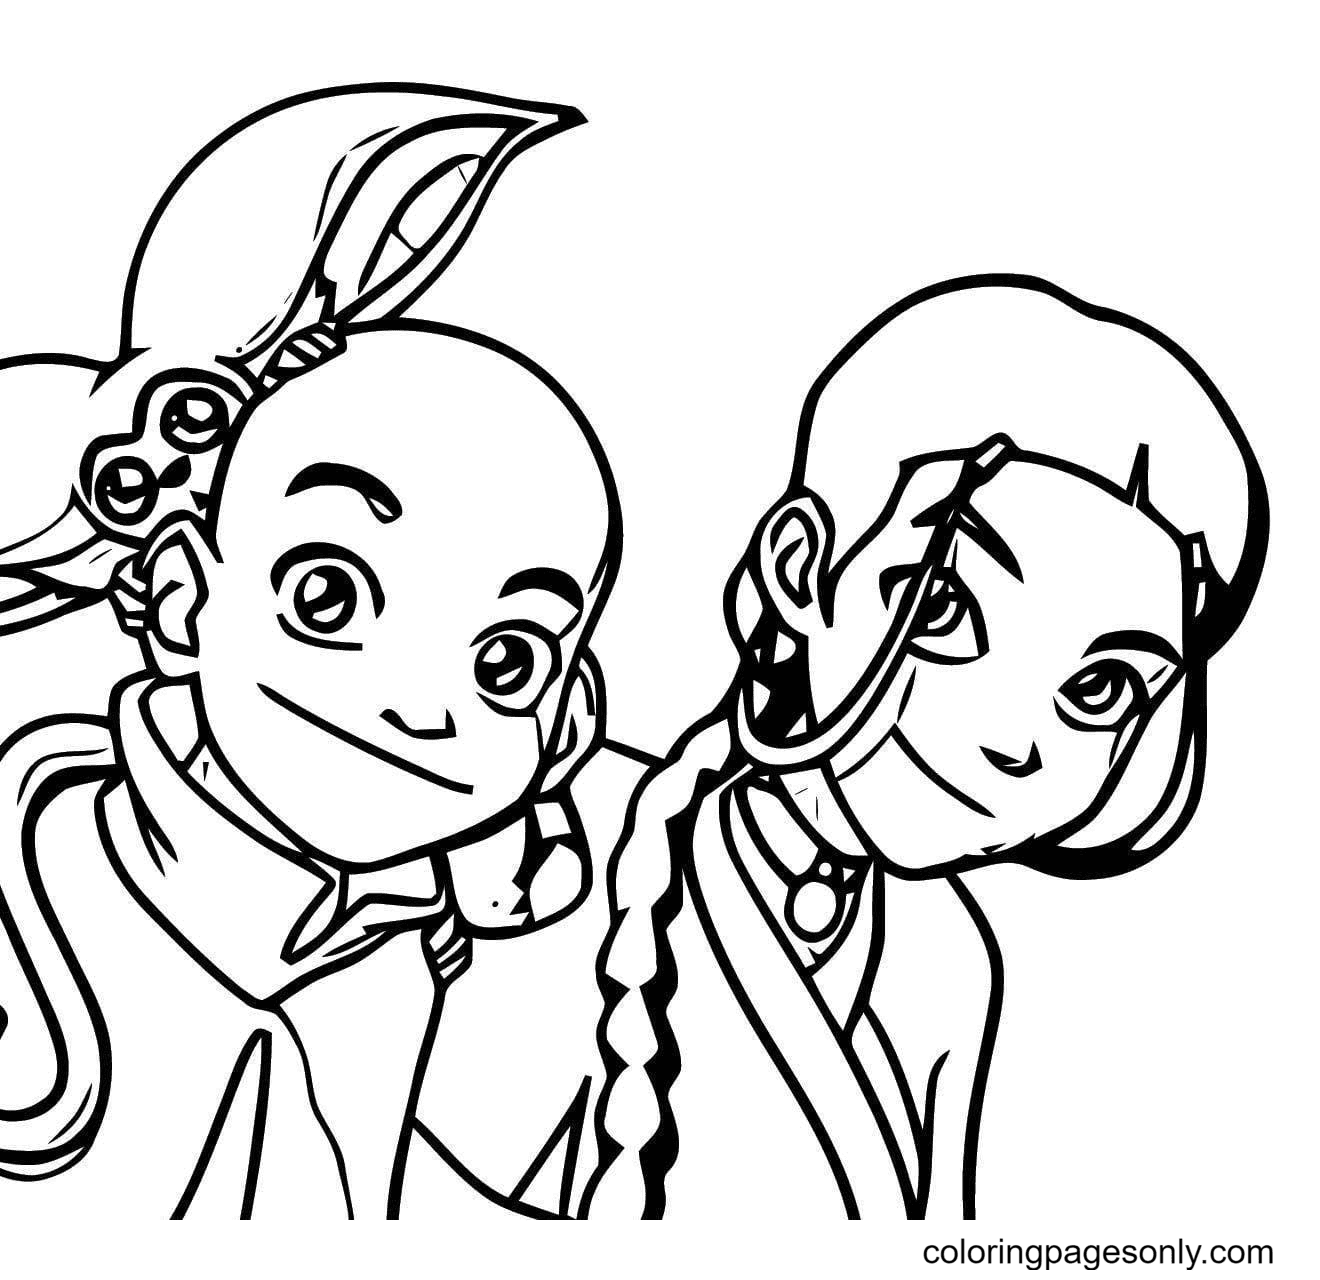 Aang, Momo and Katara Coloring Page